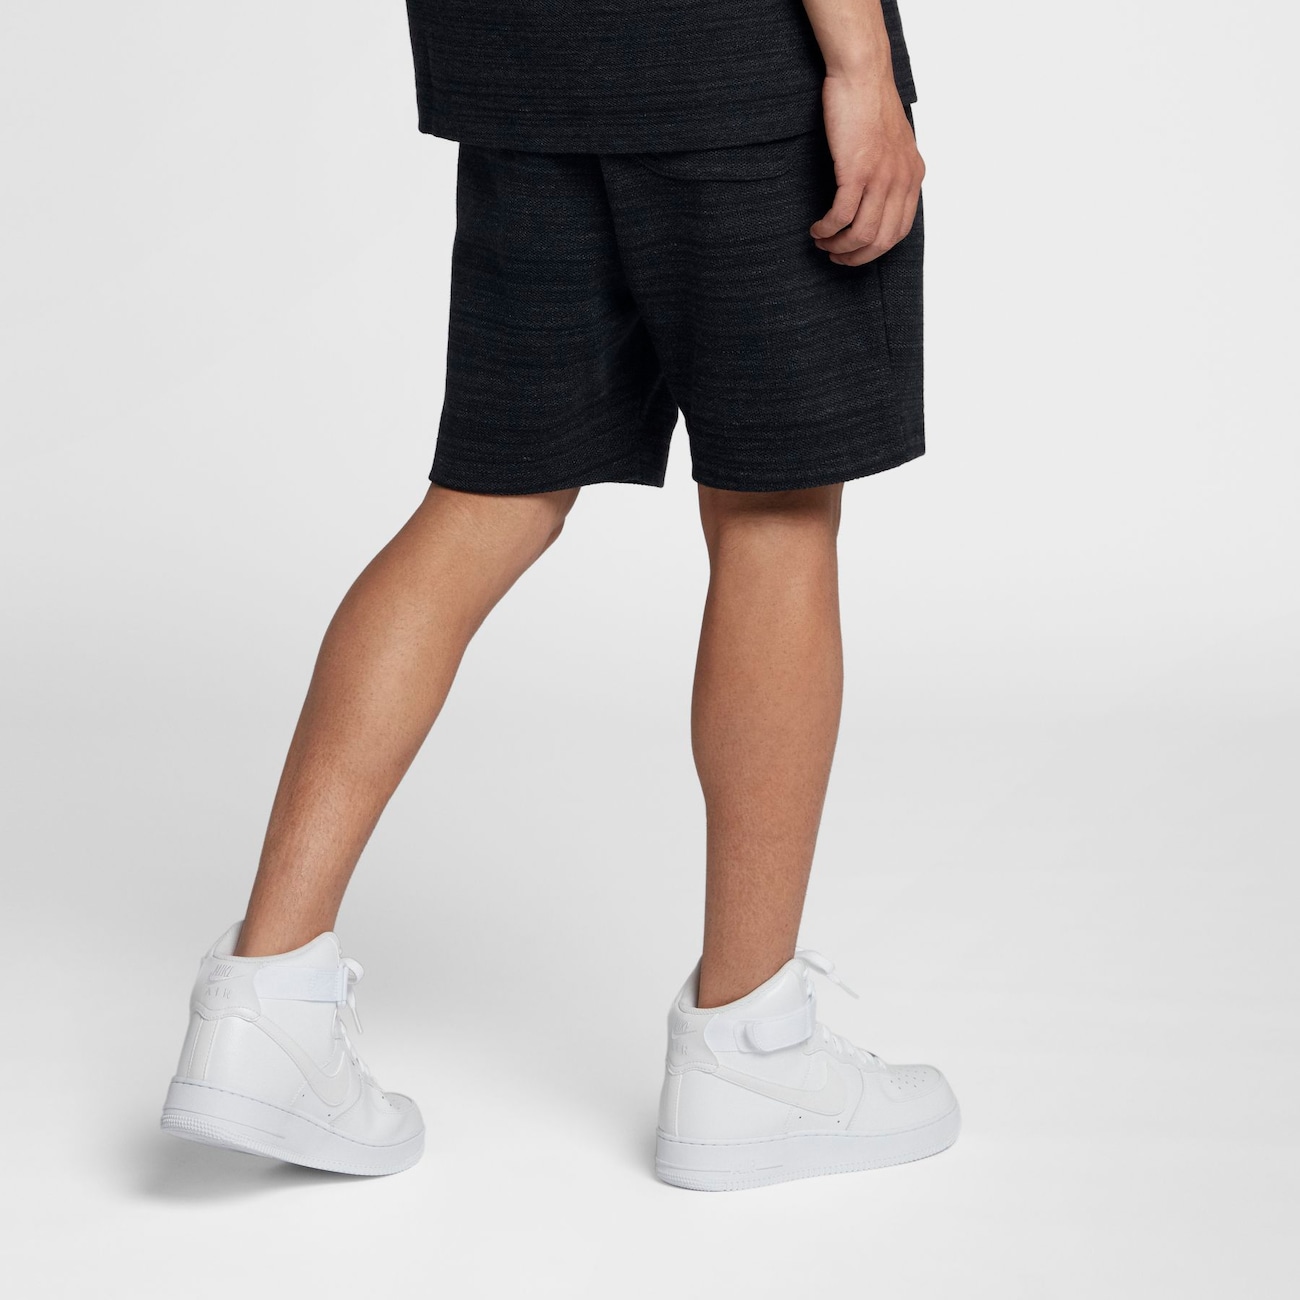 Shorts Nike Sportswear Advance 15 Masculino - Foto 2